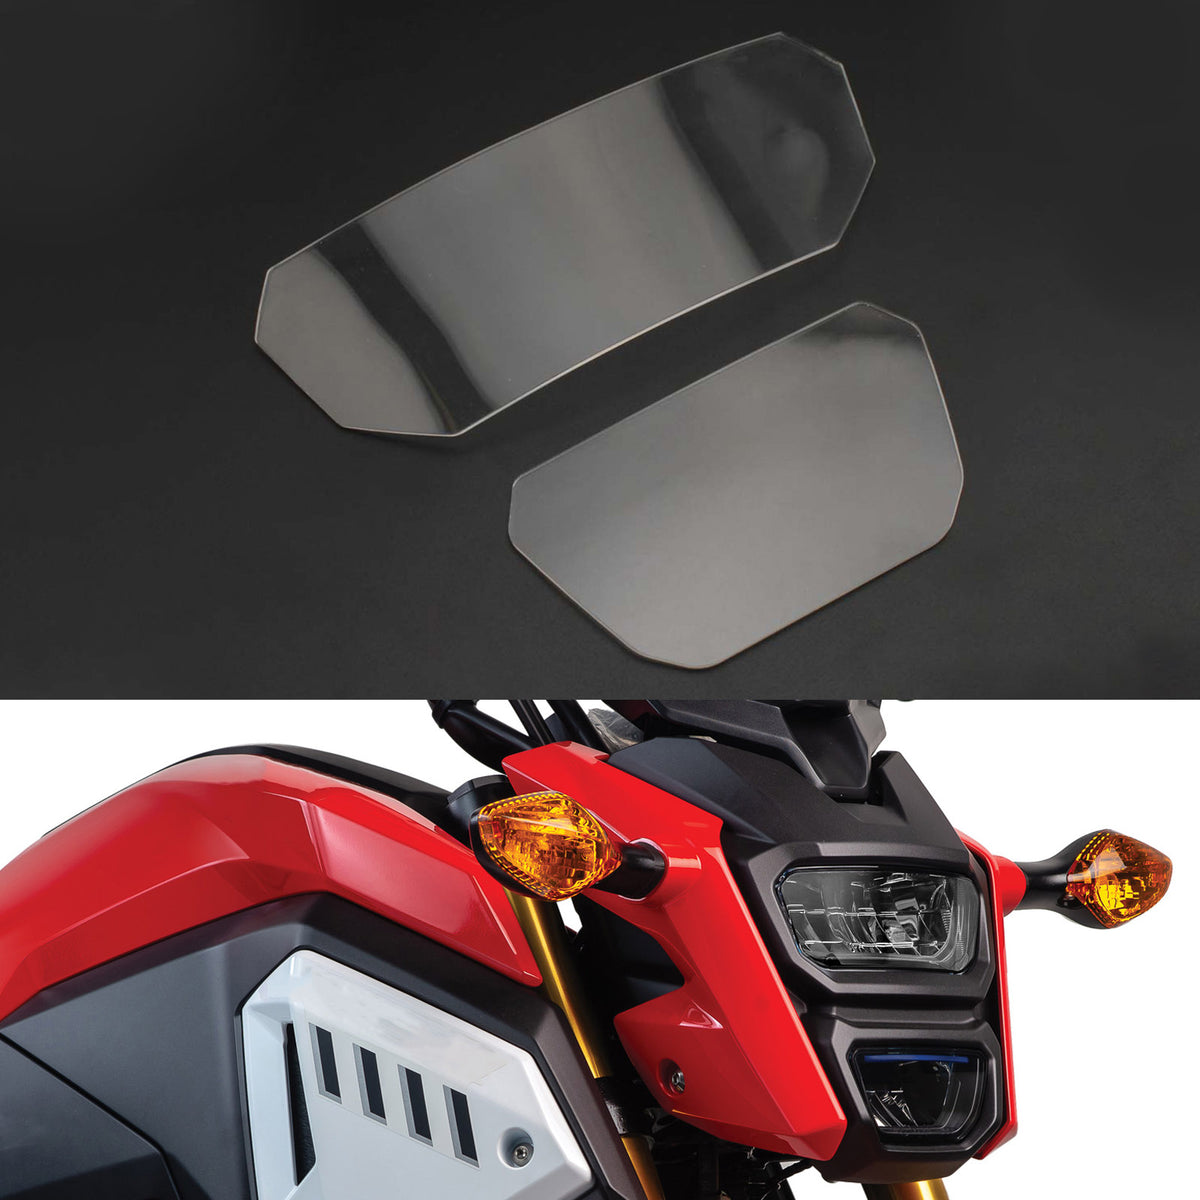 Coperchio di protezione della lente del faro anteriore adatto per Honda Msx 125 Sf 2016-2020 Fumo generico